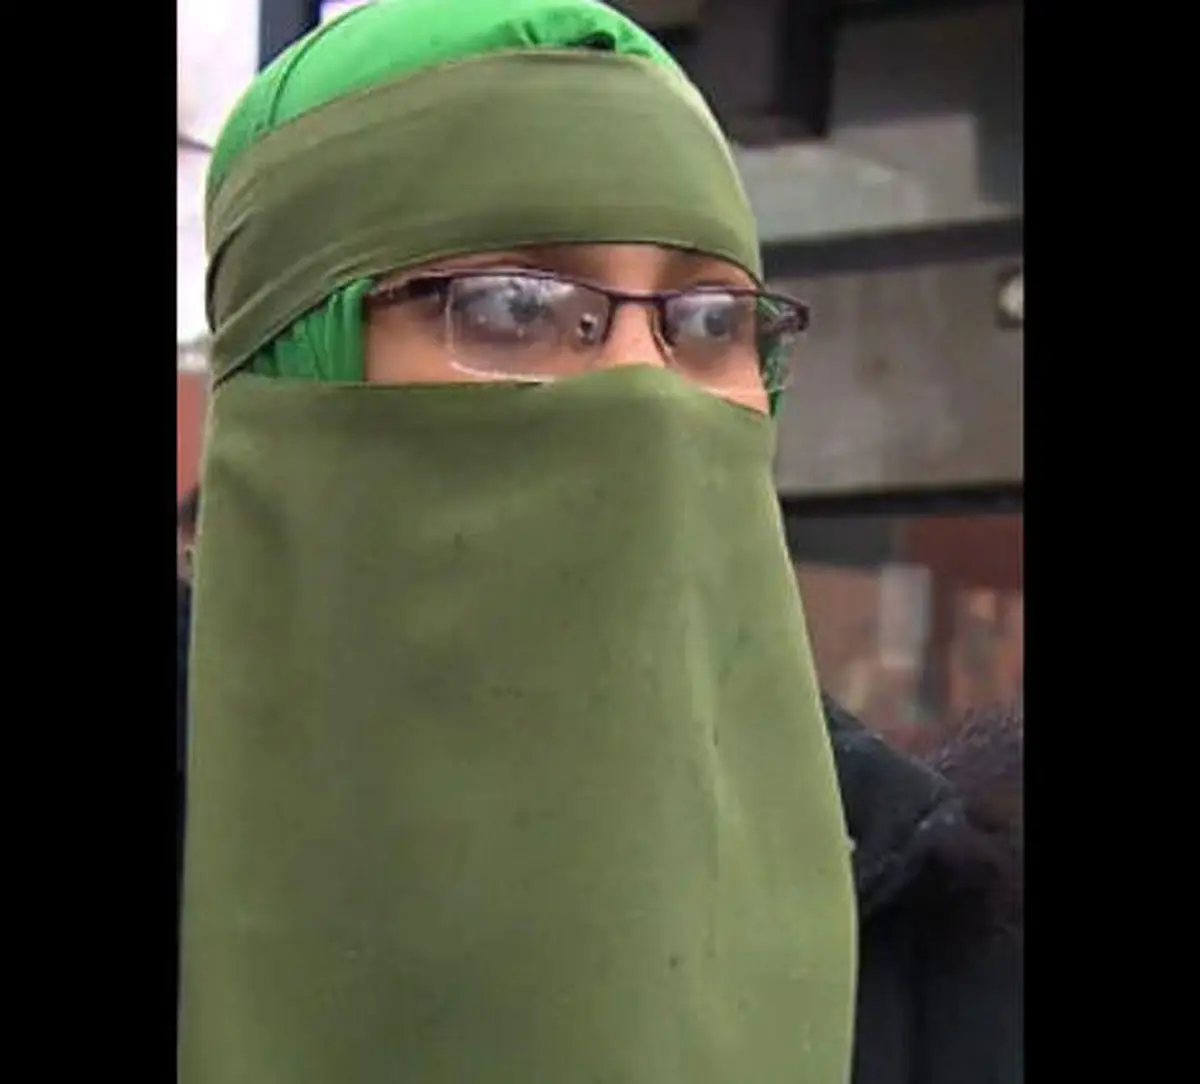 
حمله به دختر جوان در ملا عام/ حجاب کامل منجر به اقدام پلید!+عکس
